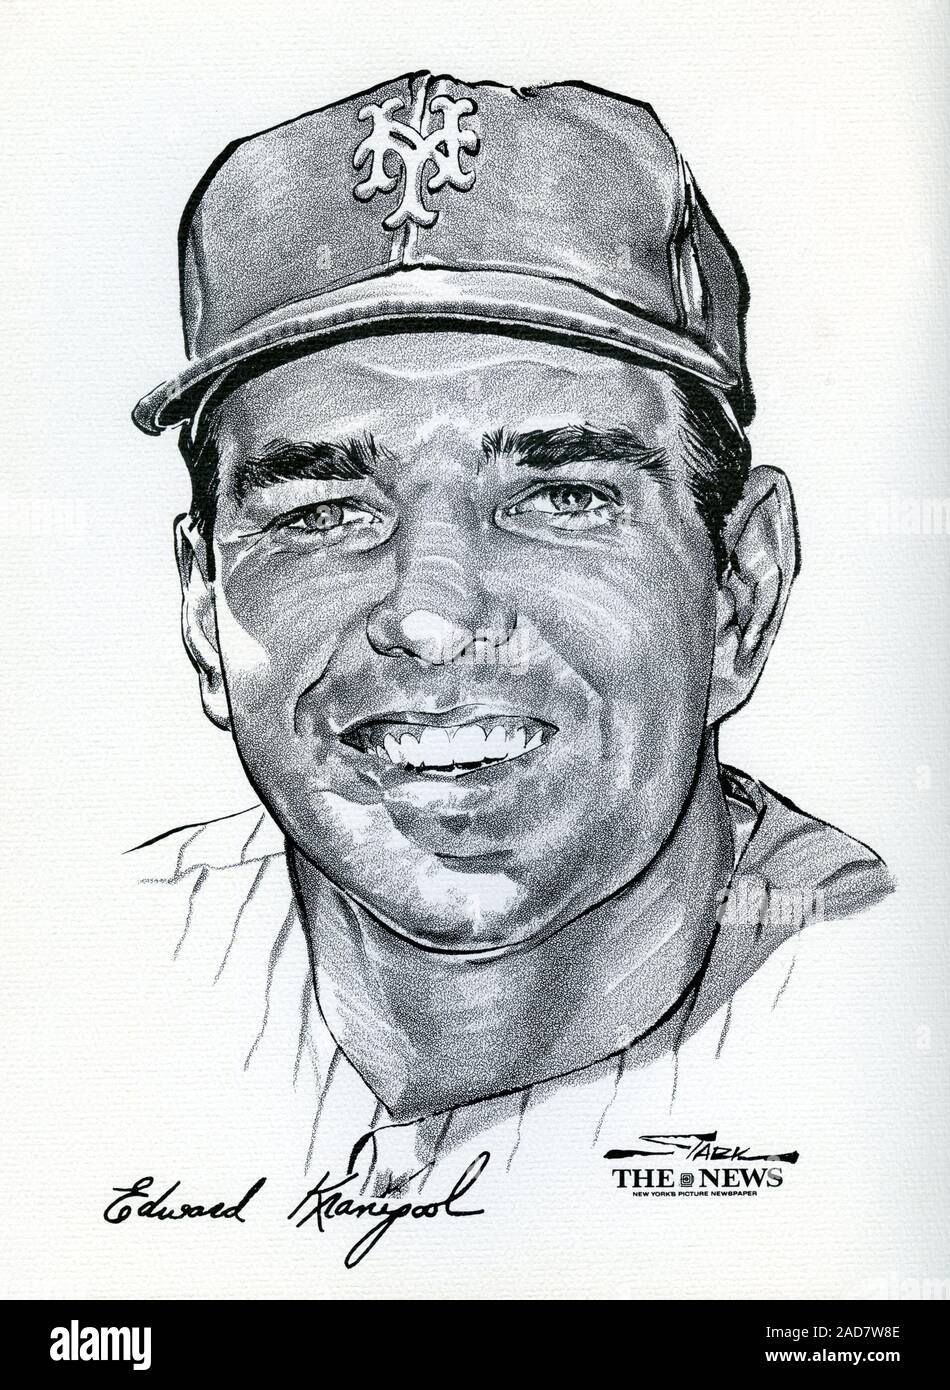 Portrait von New York Mets Spieler Ed Kranepool vom Wunder Team 1969 Mets, der World Series von Künstler Stark gewonnen und veröffentlicht als Souvenir Portfolio durch die Nachrichten von New York. Stockfoto